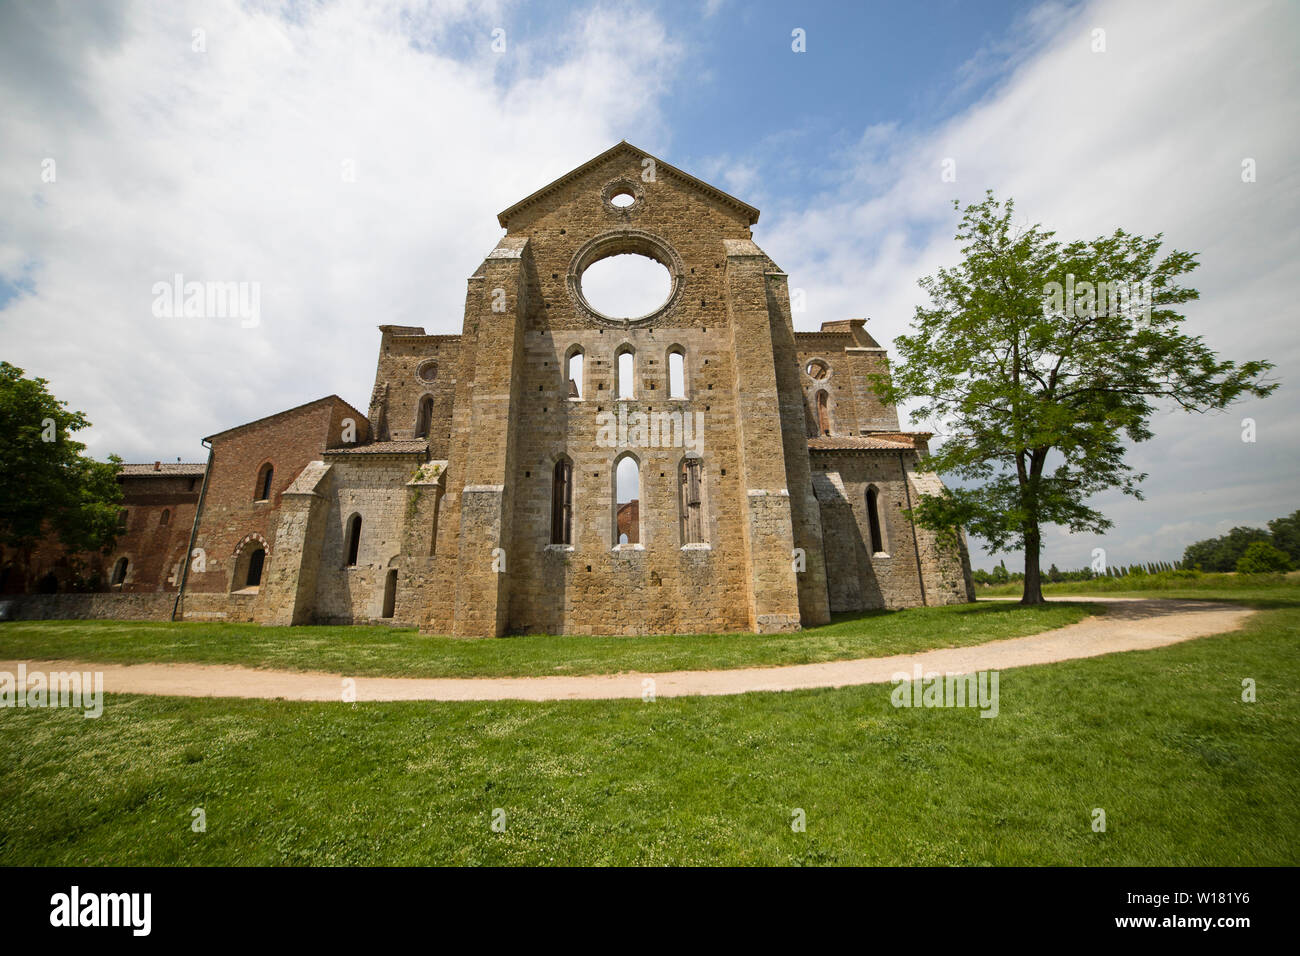 La façade de San Galgano abbey de l'extérieur par une journée ensoleillée avec un chemin qui l'entourent et un arbre sur le côté droit. Chiusdino, Toscane, Italie. Banque D'Images